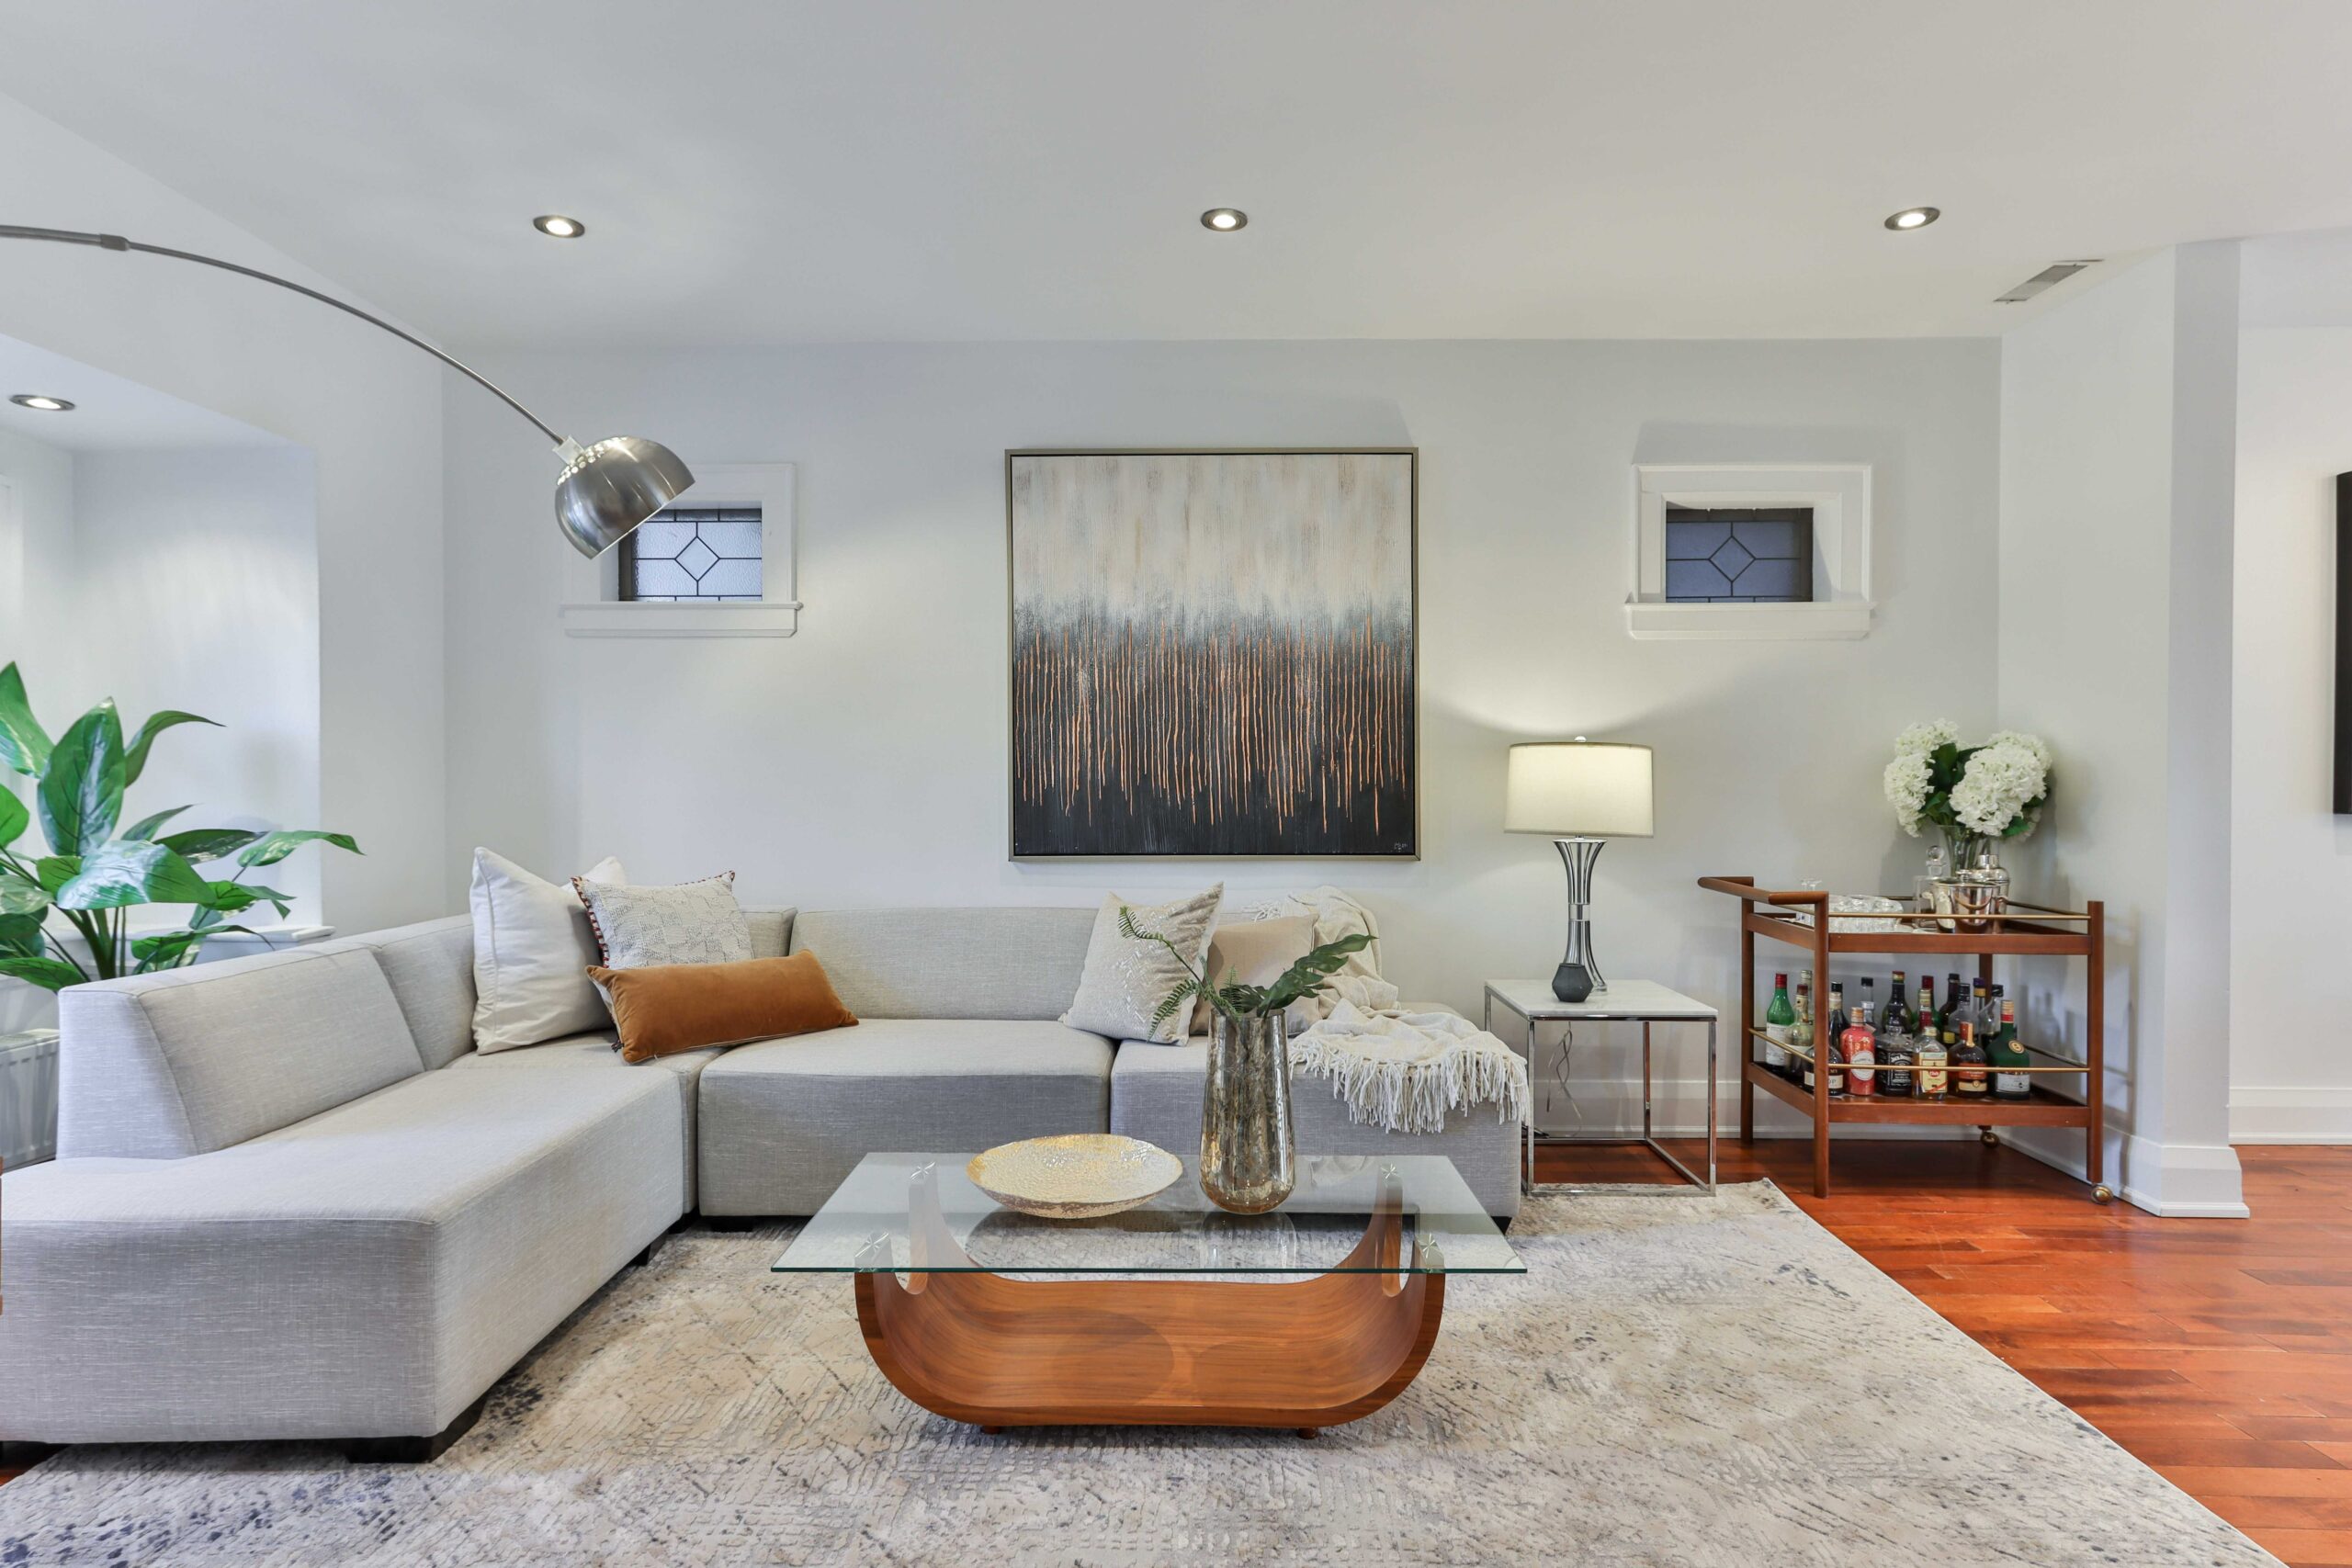 Casa com pé direito duplo moderna - veja dicas de decoração e conheça todos  os ambientes!